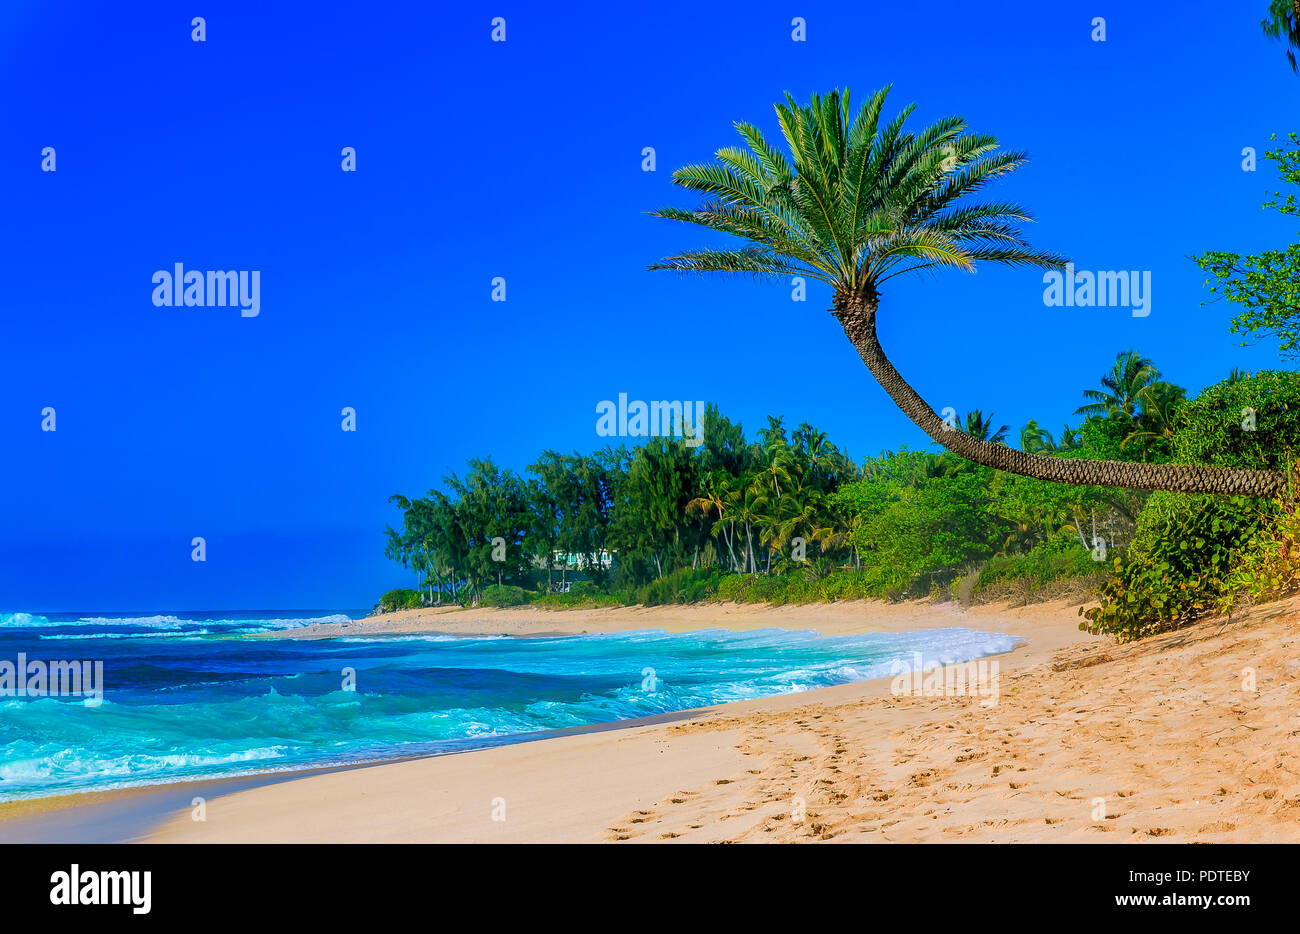 Palmier suspendues sur un lagon tropical beach avec ciel bleu Banque D'Images